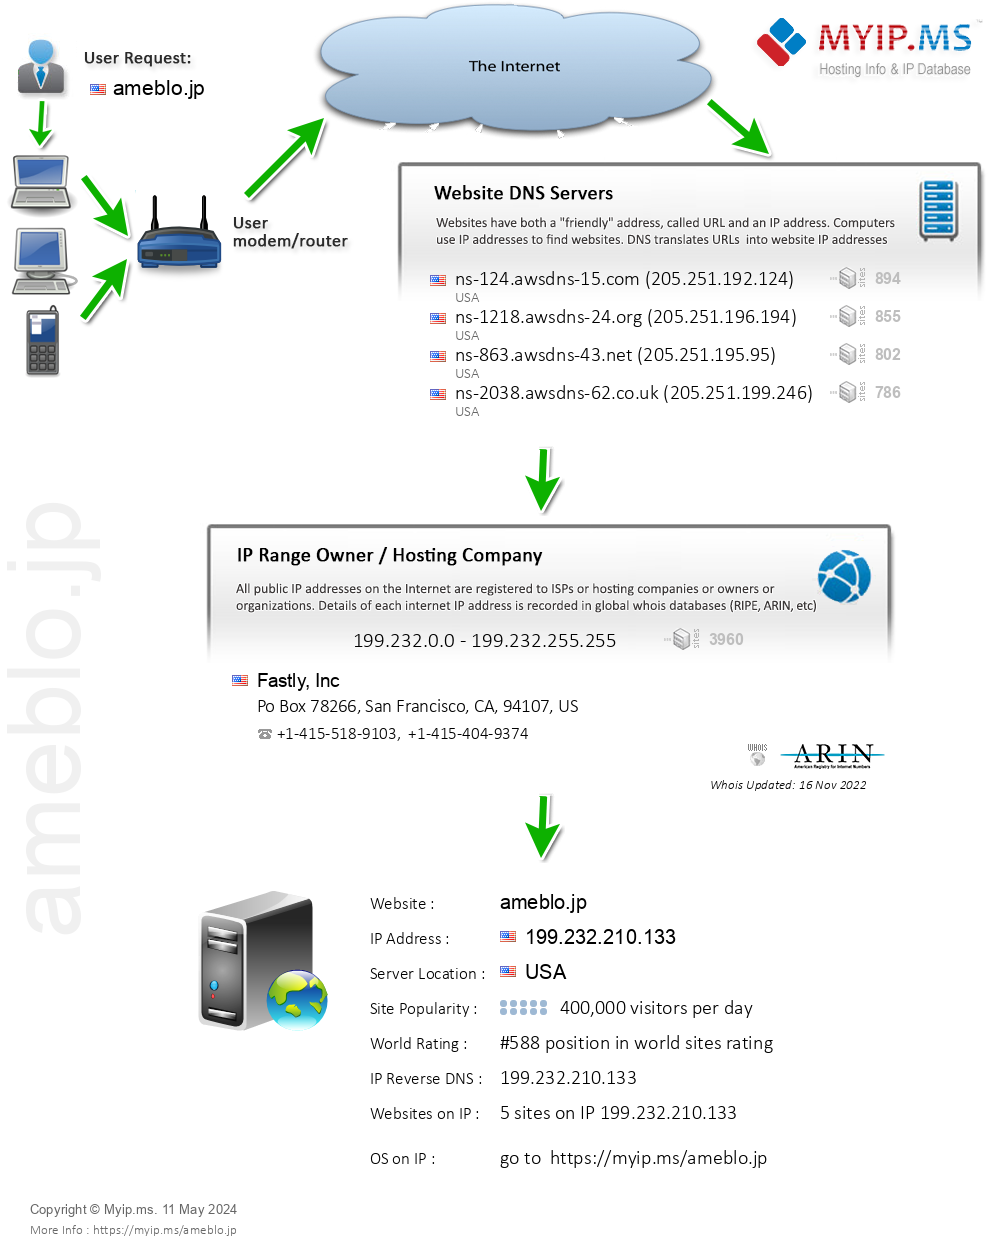 Ameblo.jp - Website Hosting Visual IP Diagram